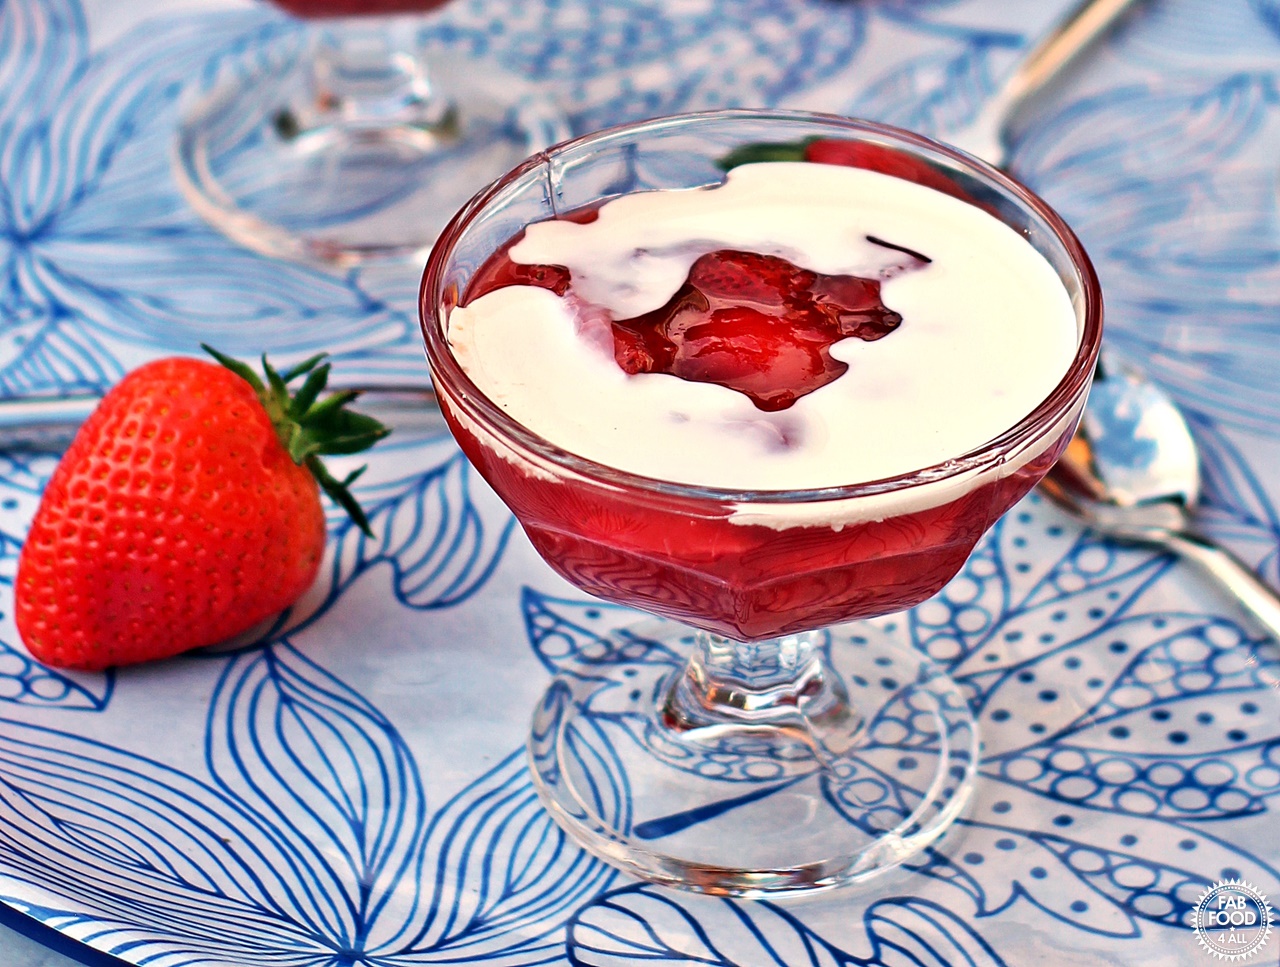 Rødgrød med fløde (Danish Red Berry Compote with Cream)